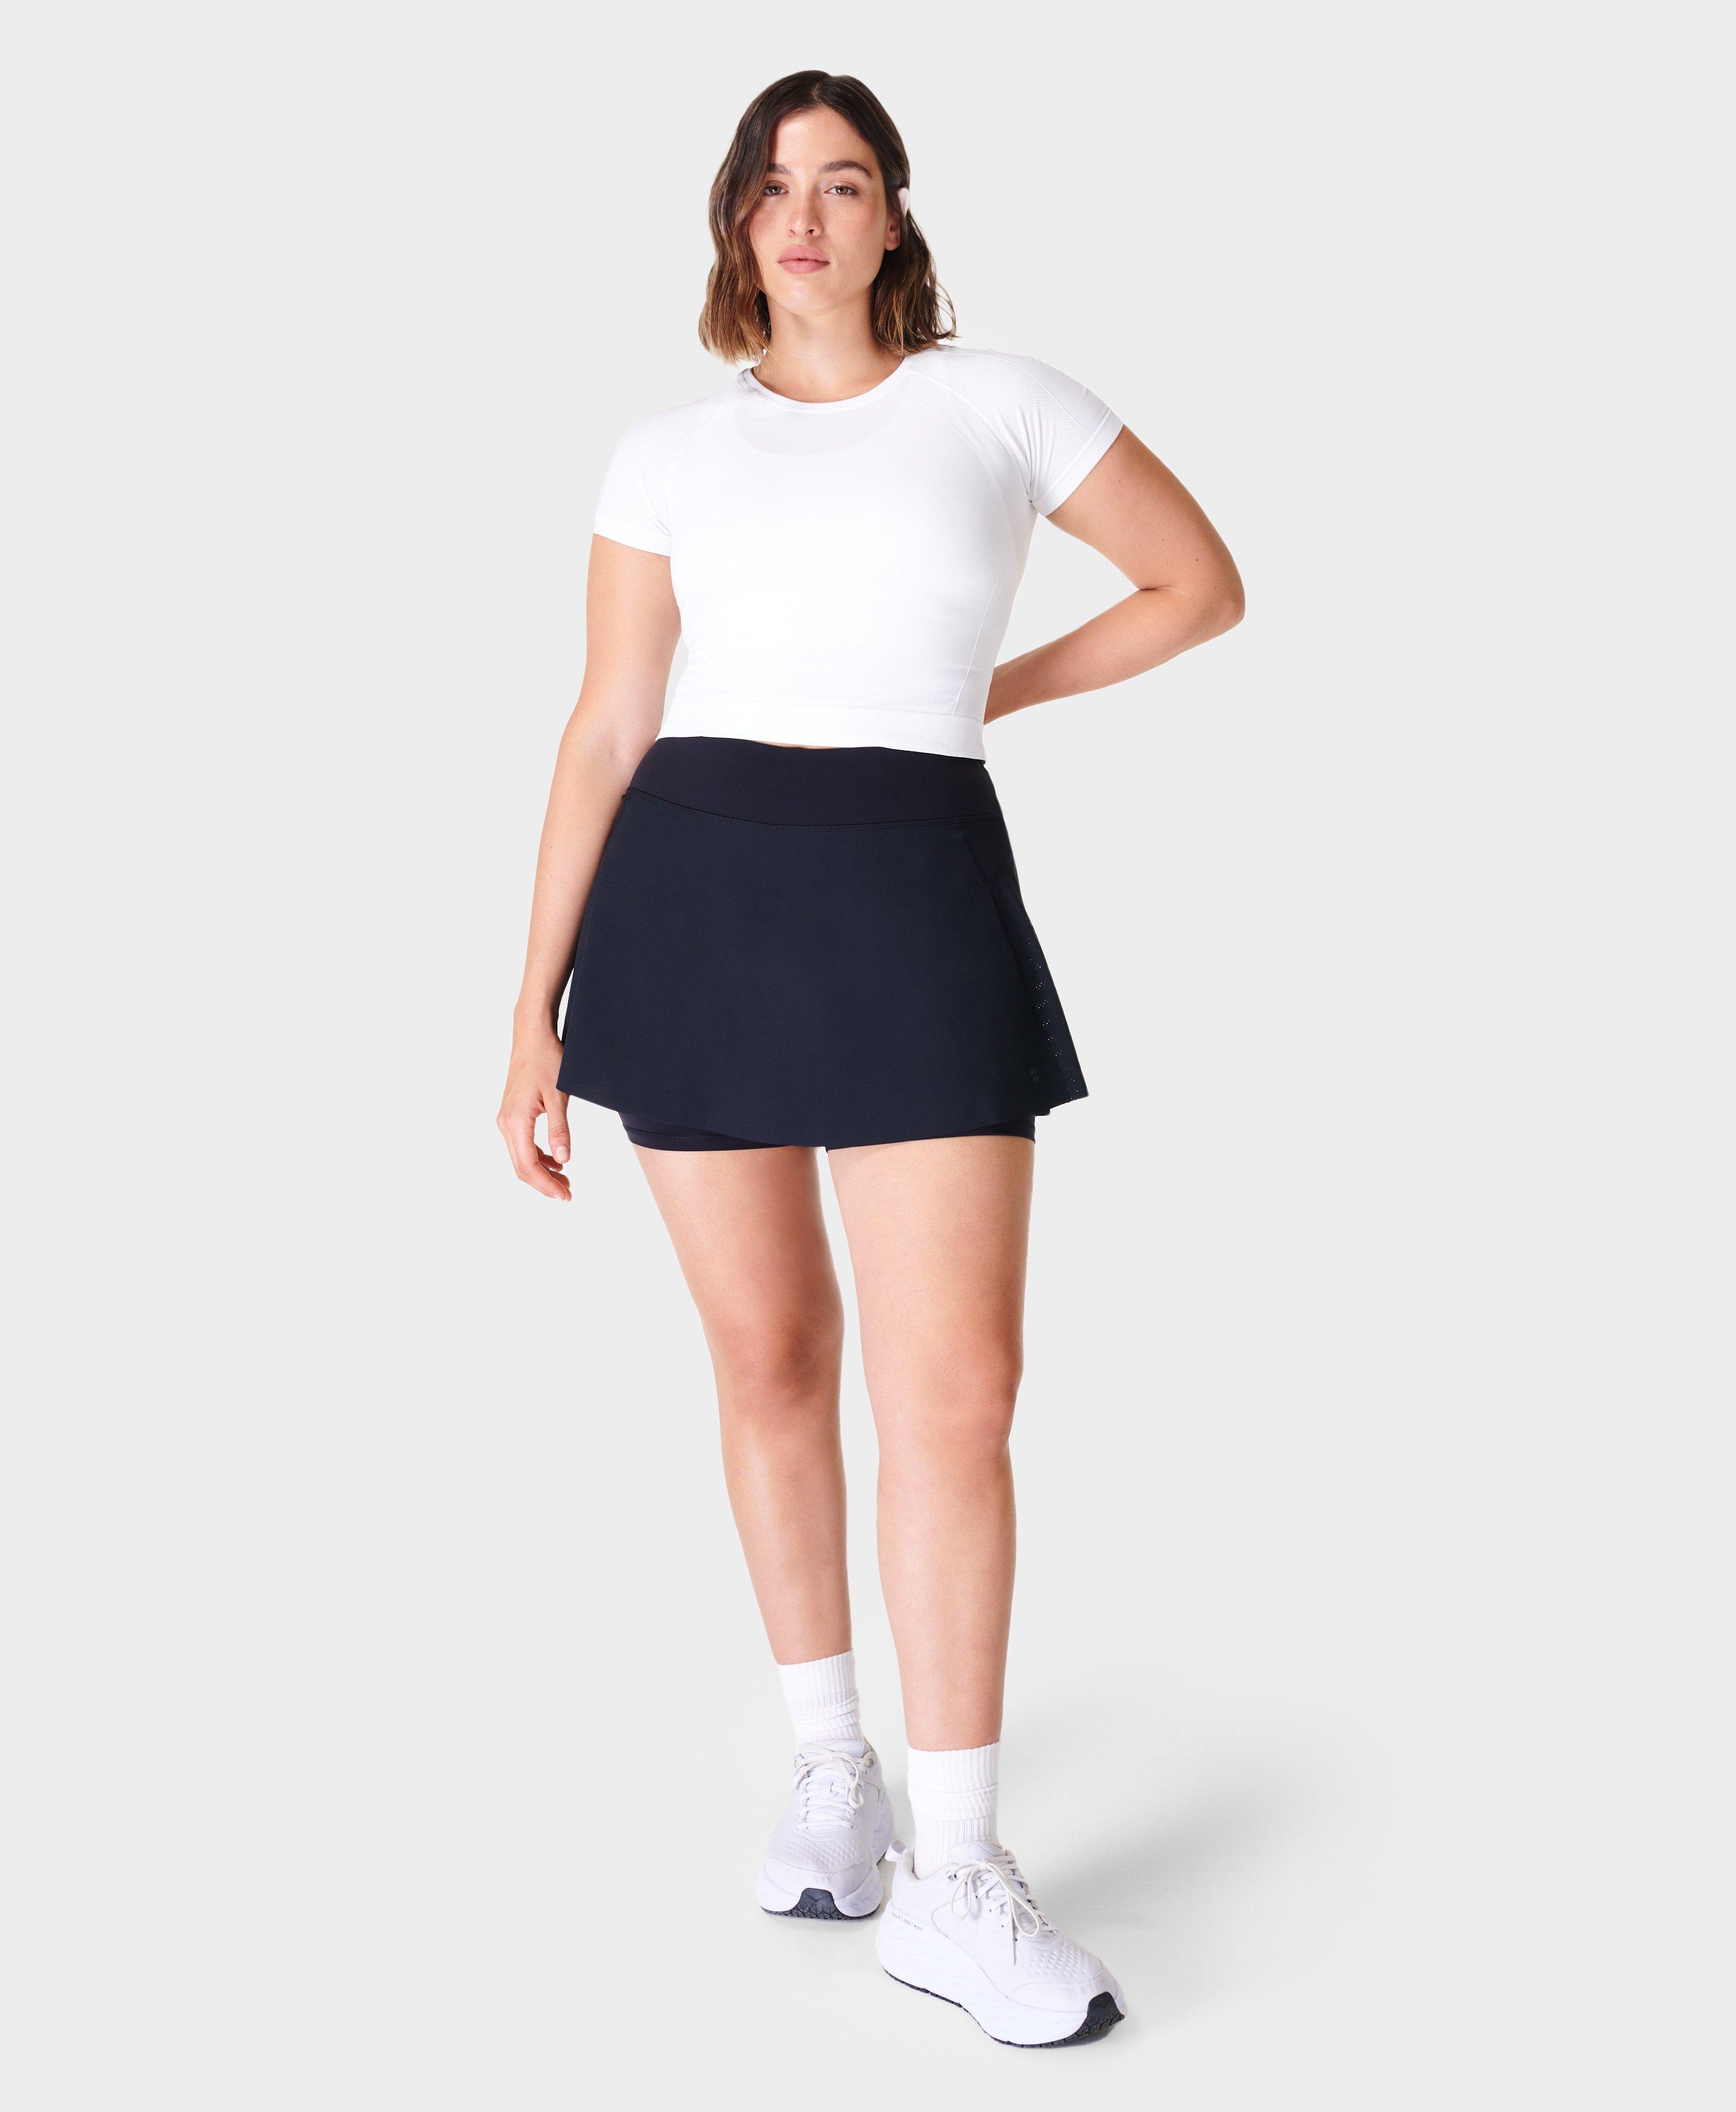 Tangerine Womens Athletic Stretchy Skort - Skirt/Shorts - Gray